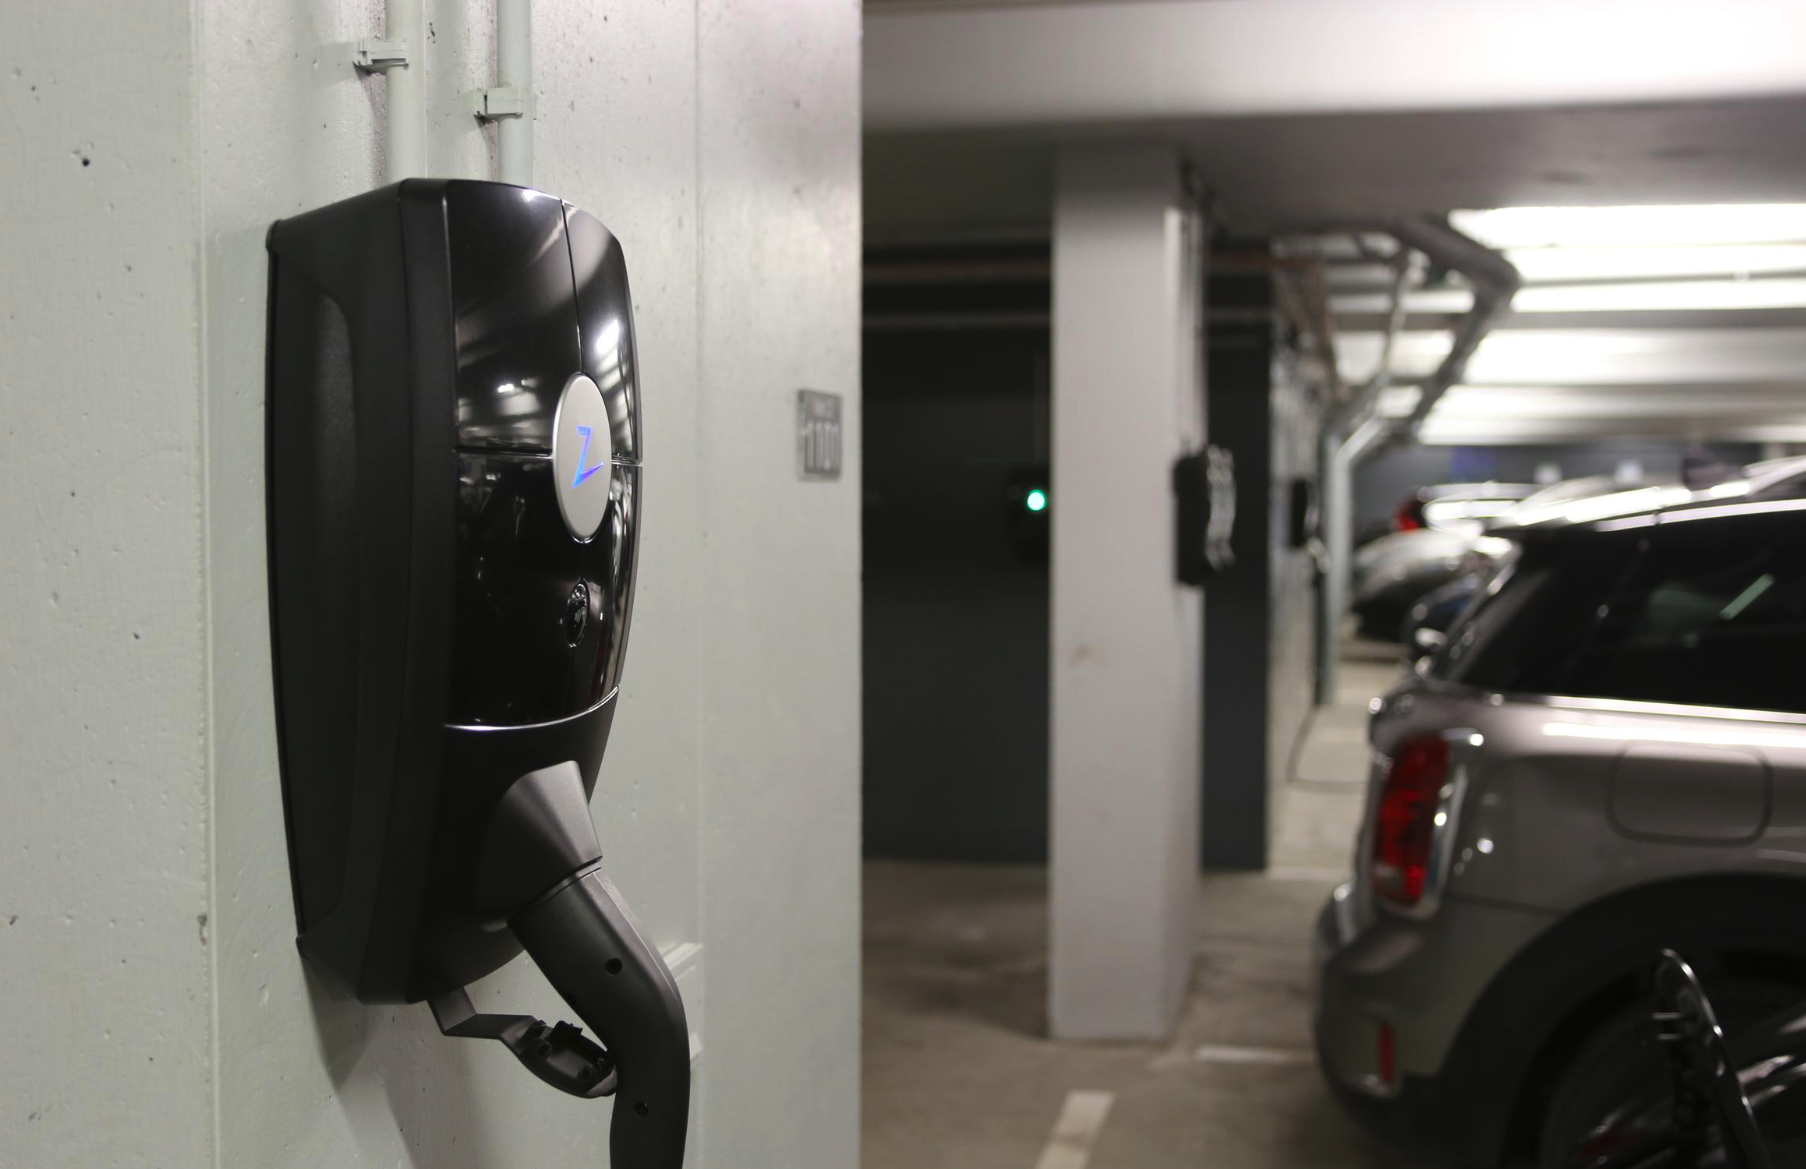 En elbilsladdare monterad på en vägg i ett underjordiskt parkeringsgarage. En silverfärgad bil är parkerad bredvid laddaren, och det finns fler bilar i bakgrunden